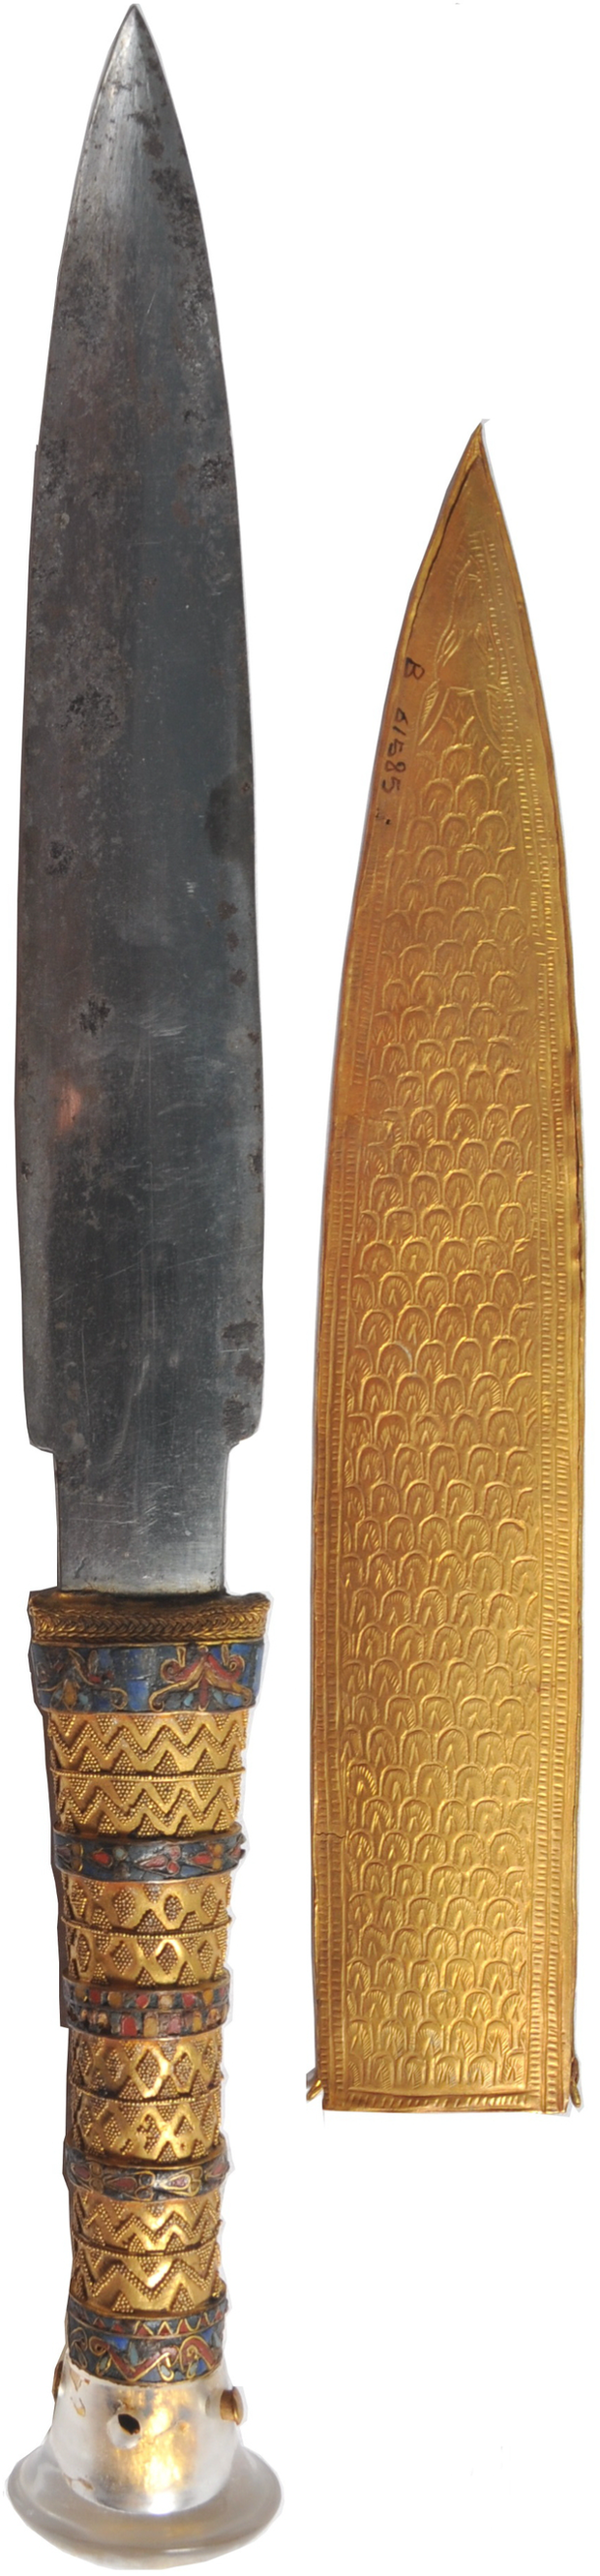 Phát hiện dao găm có nguồn gốc bên ngoài Trái đất trong mộ Pharaoh Tutankhamun - Ảnh 2.